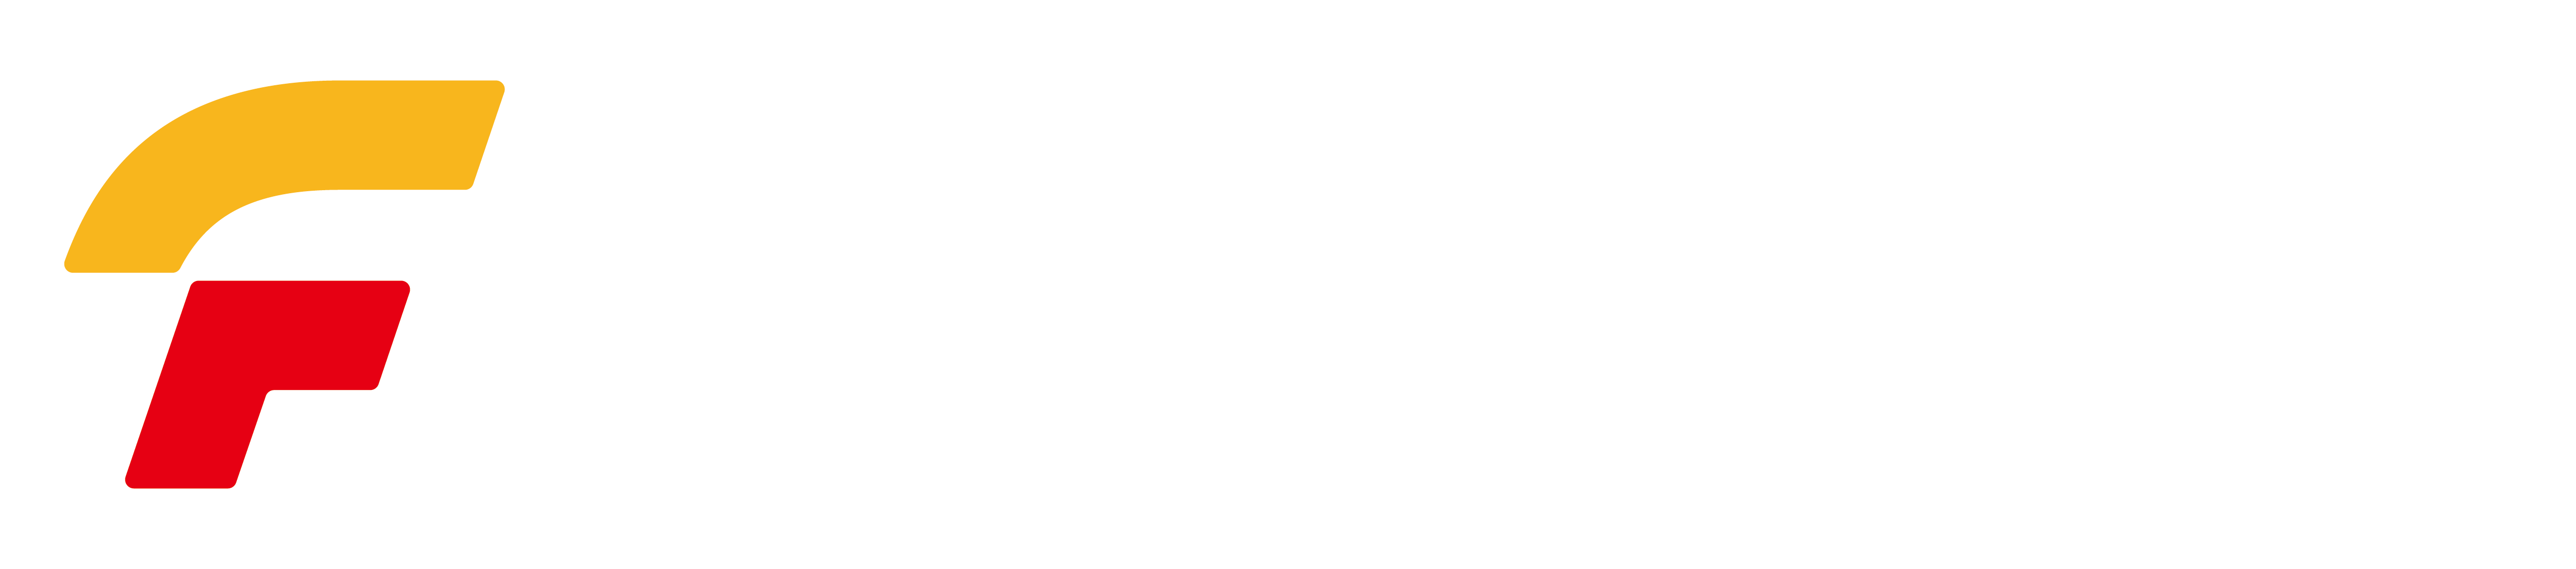 香港新港彩唯一官方网站